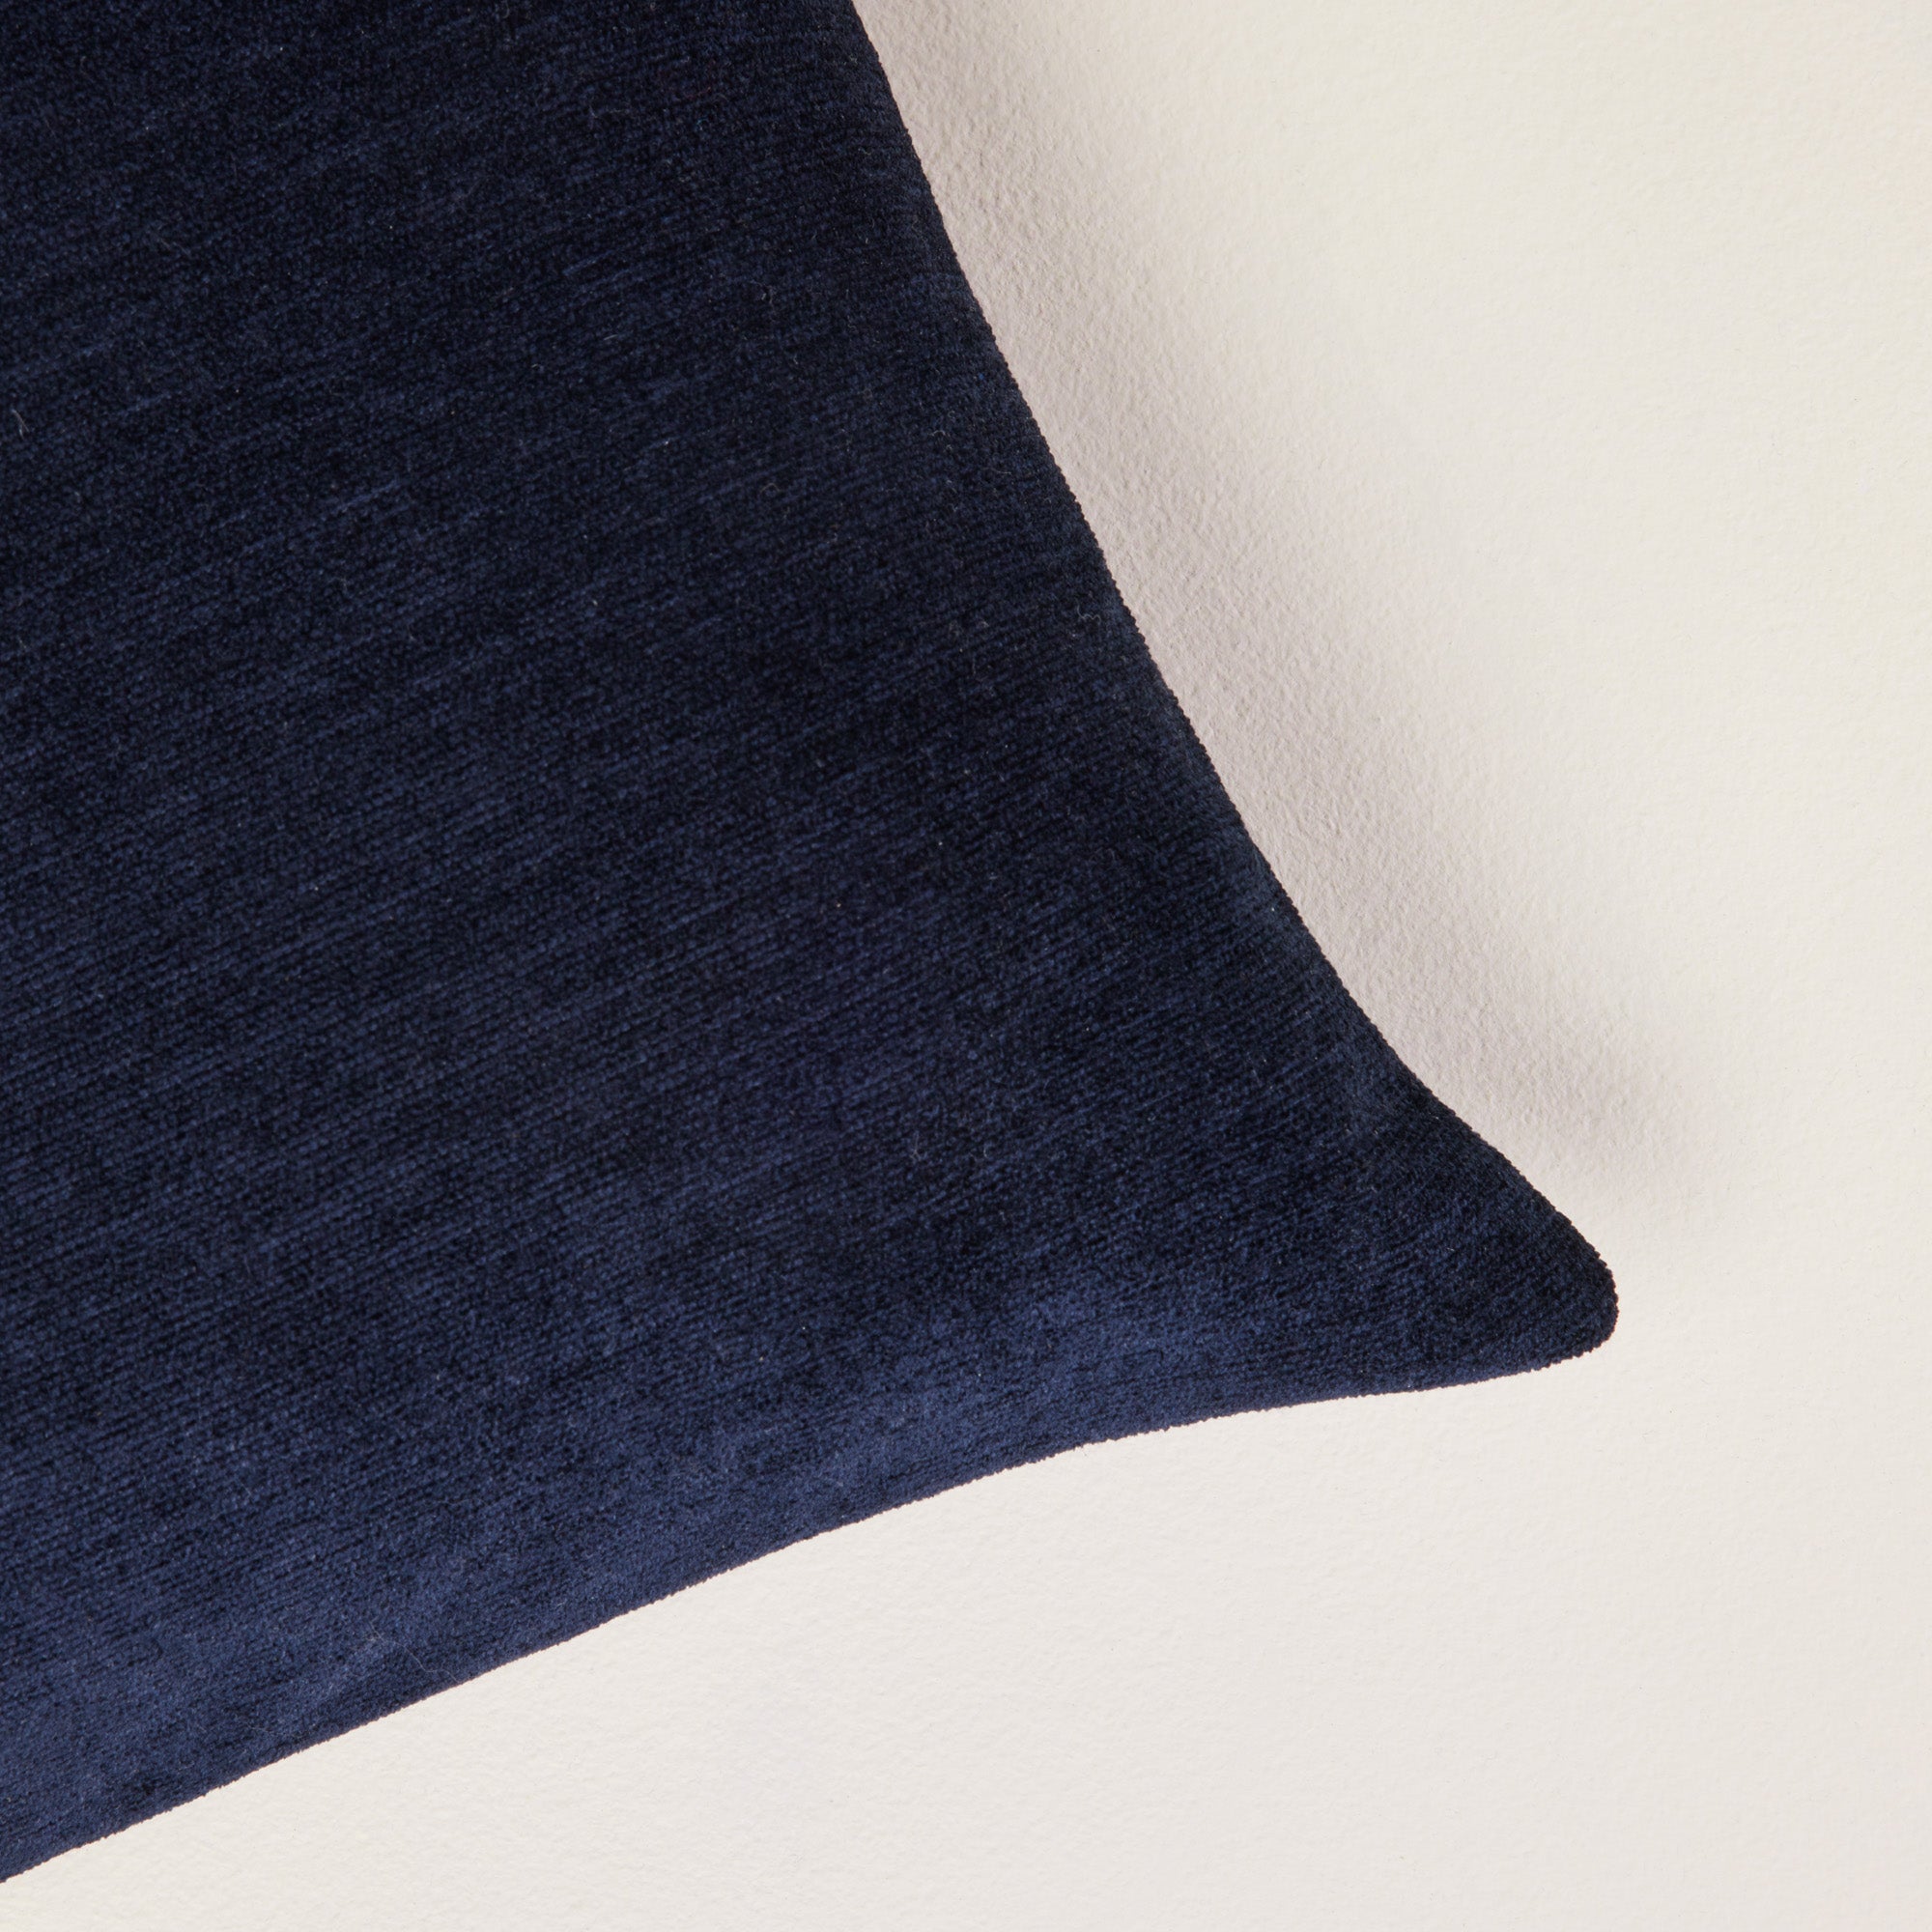 Bazyl dark blue cushion cover